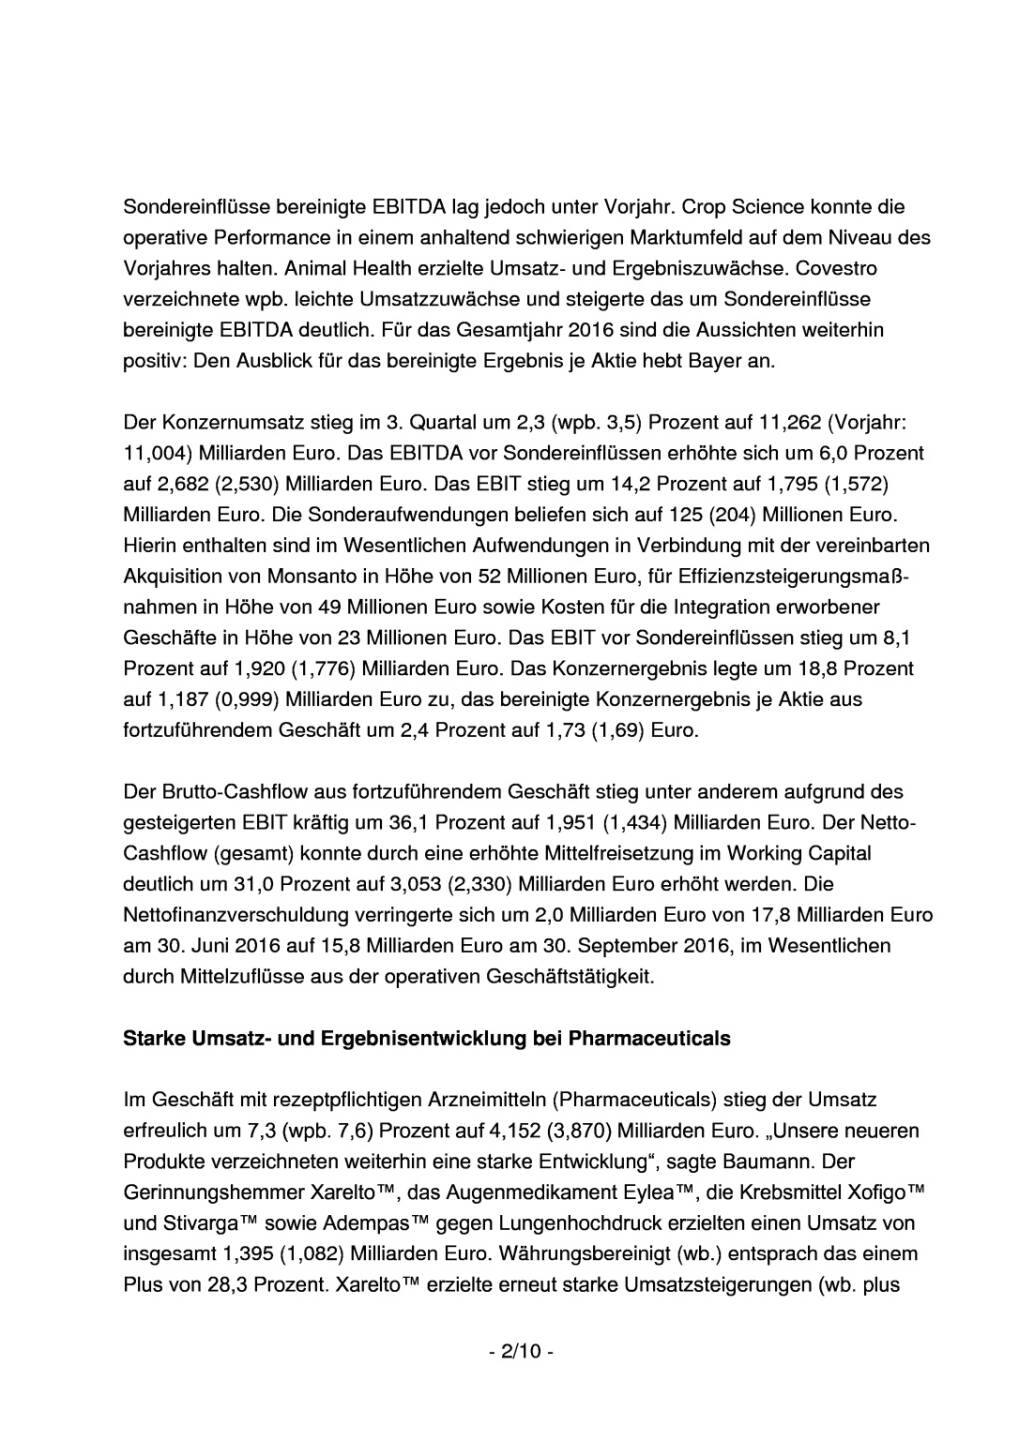 Bayer: Übernahme von Monsanto vereinbart, Seite 2/10, komplettes Dokument unter http://boerse-social.com/static/uploads/file_1934_bayer_ubernahme_von_monsanto_vereinbart.pdf